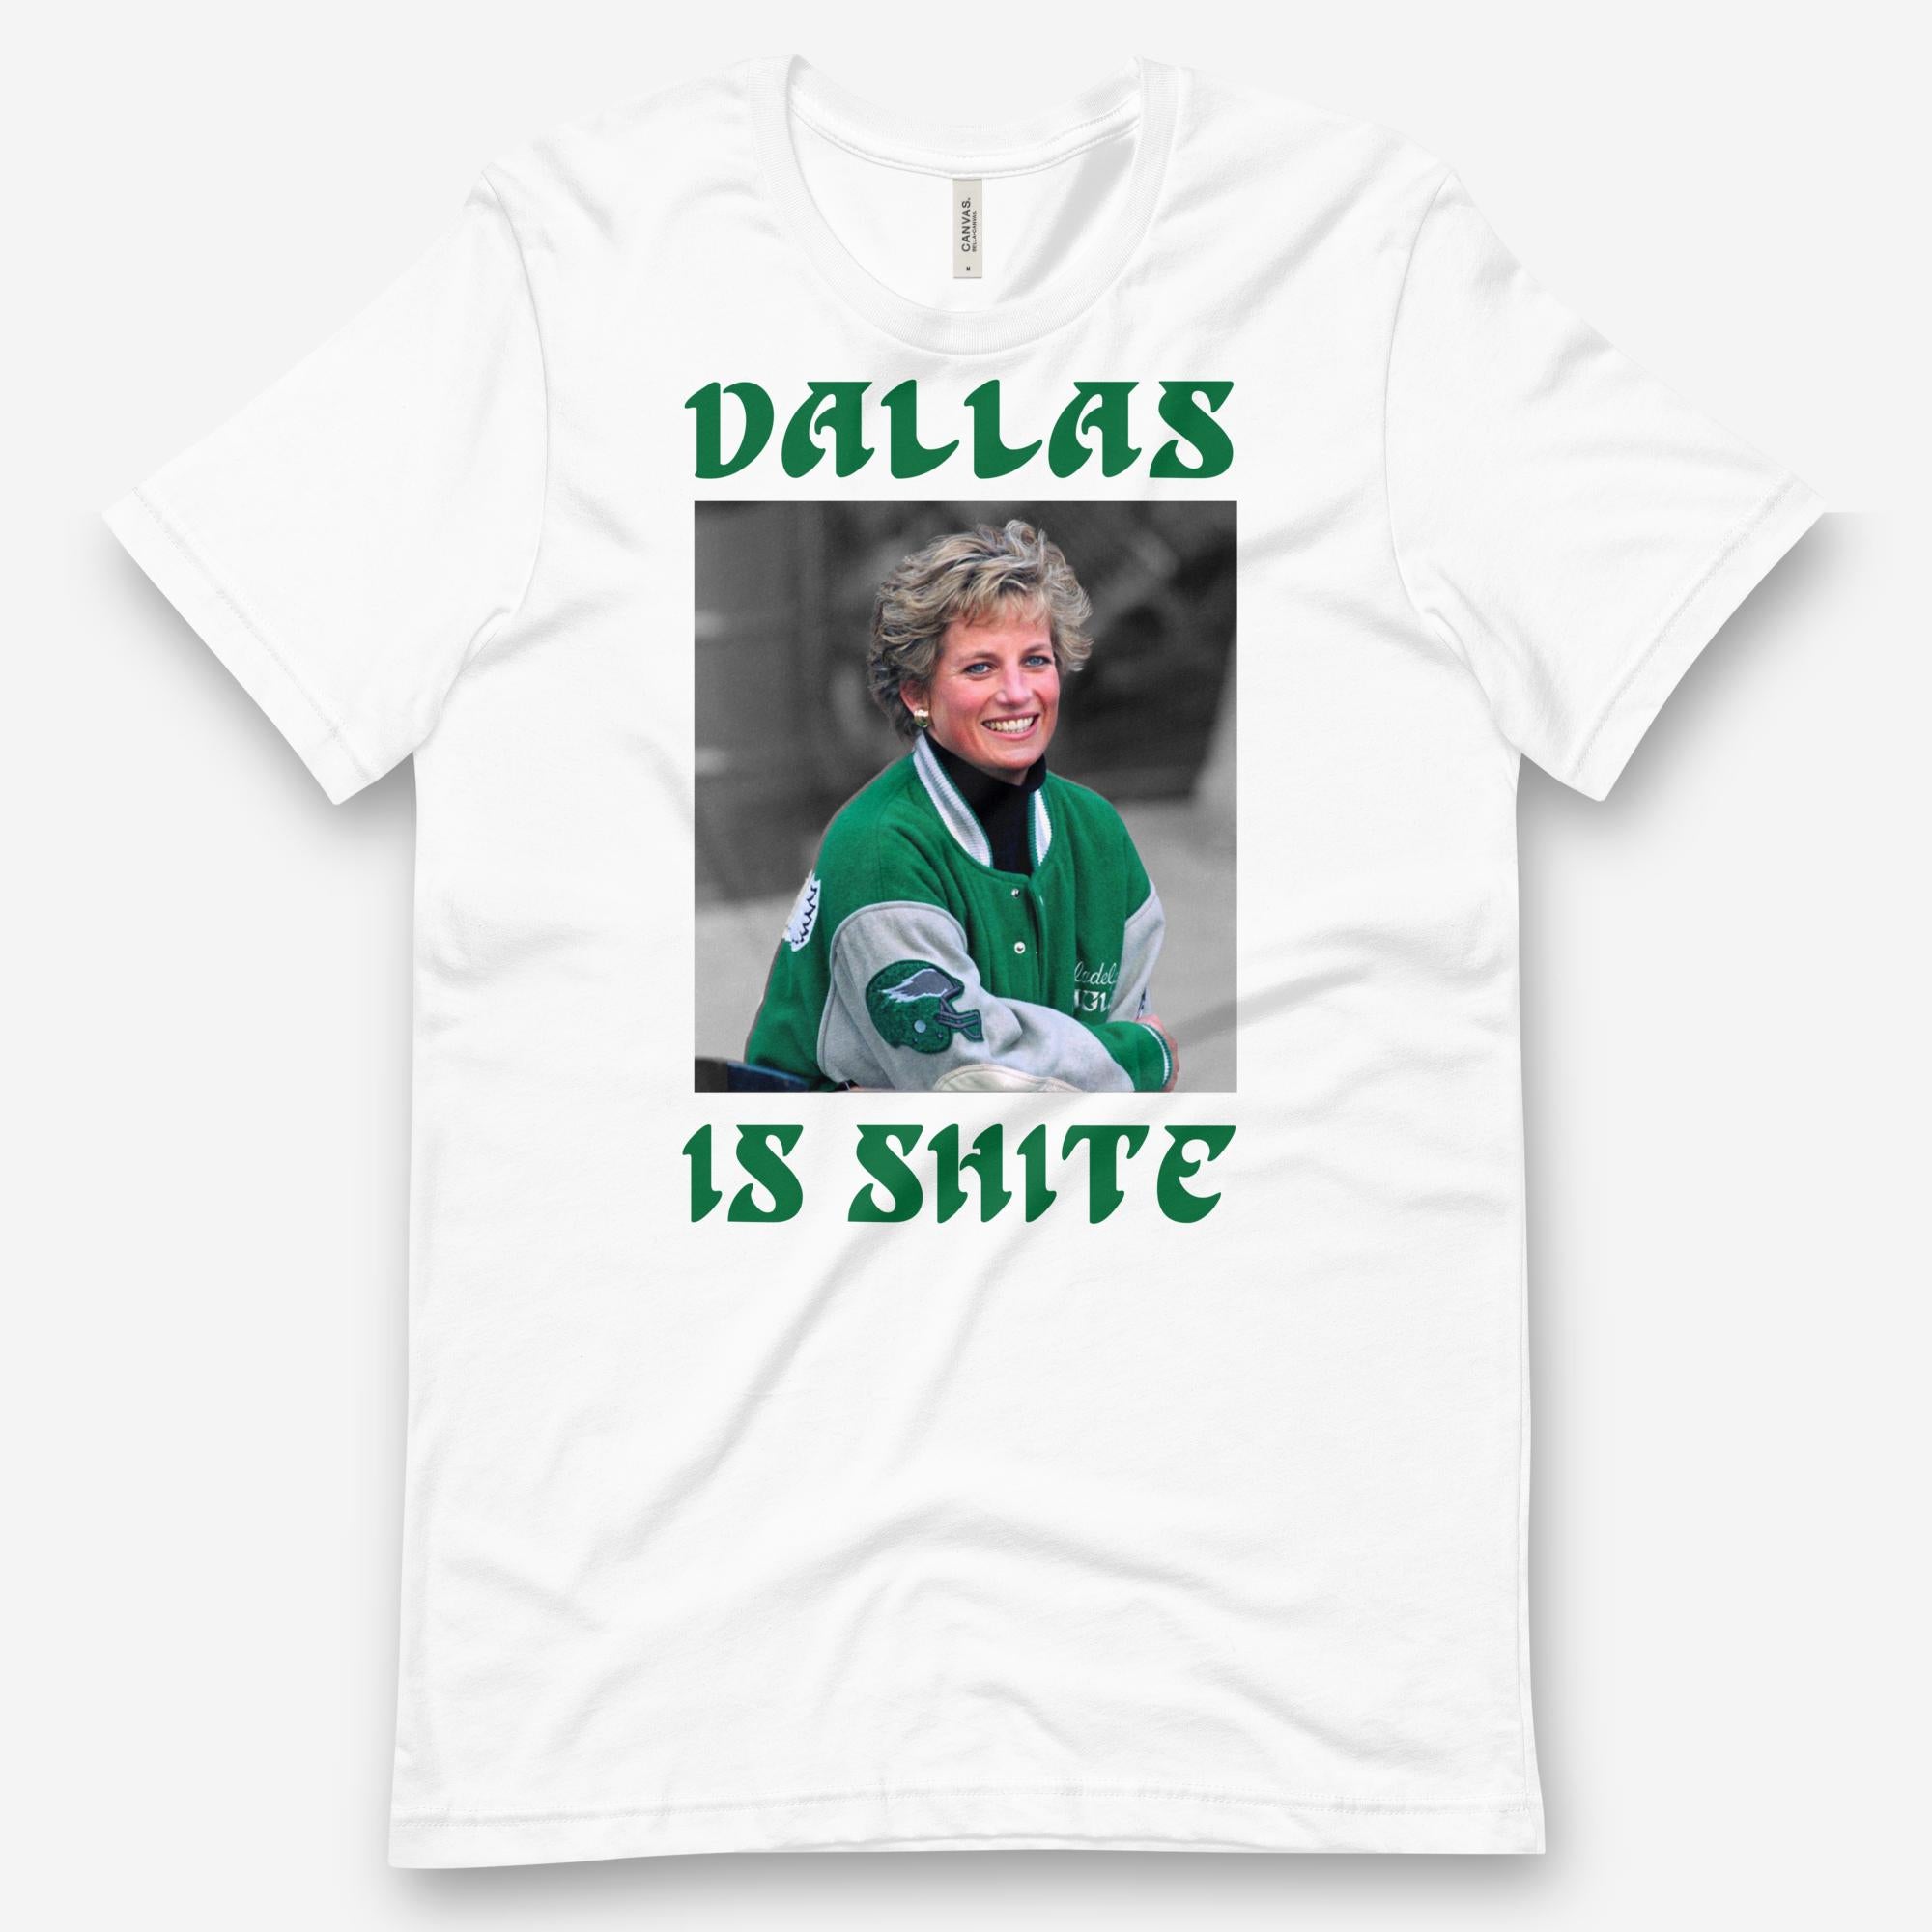 "Dallas Is Shite" Tee